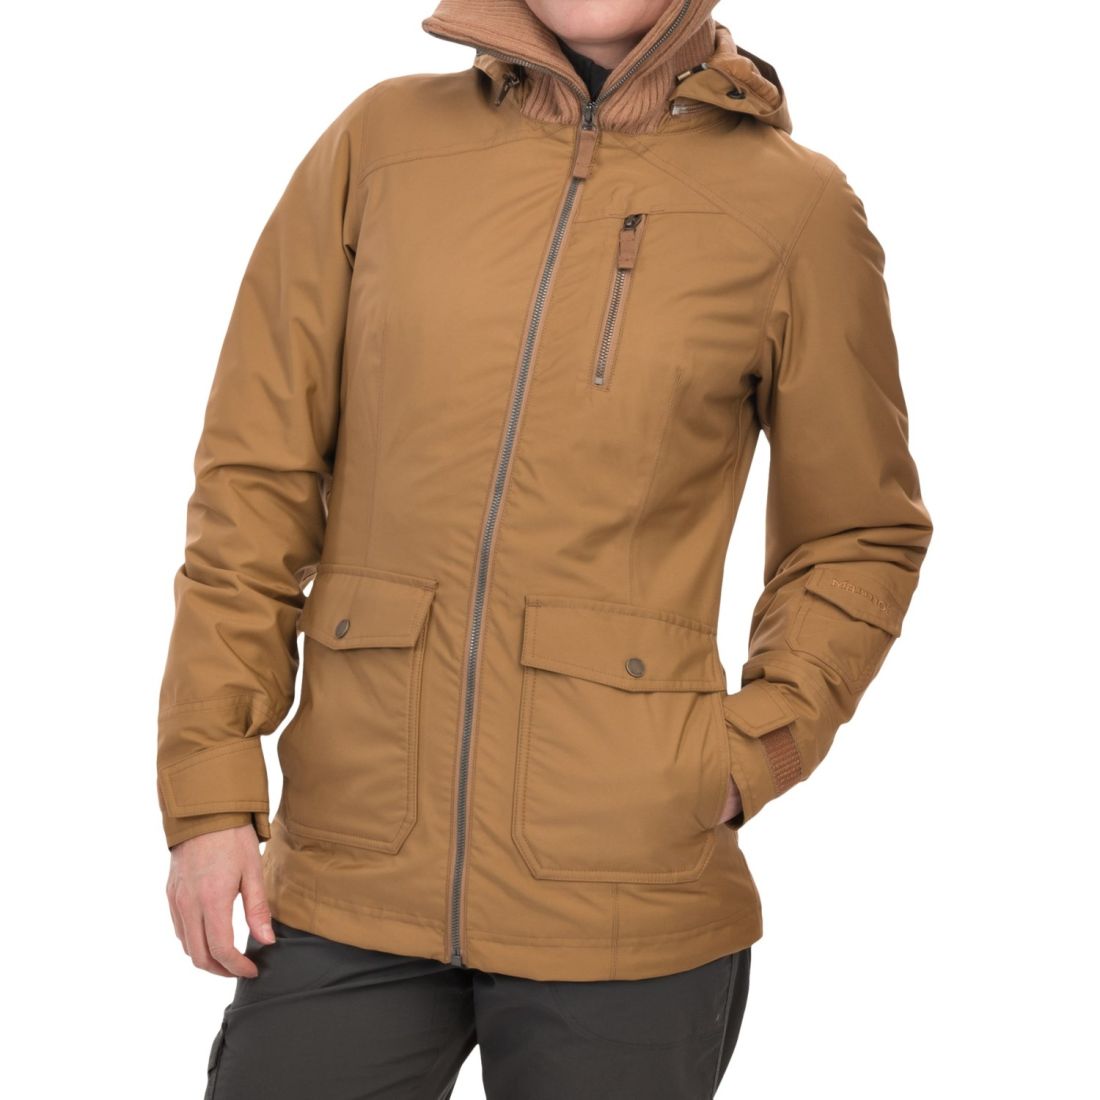 Marmot - Куртка оригинальная для женщин Wm's Lovenia Jacket